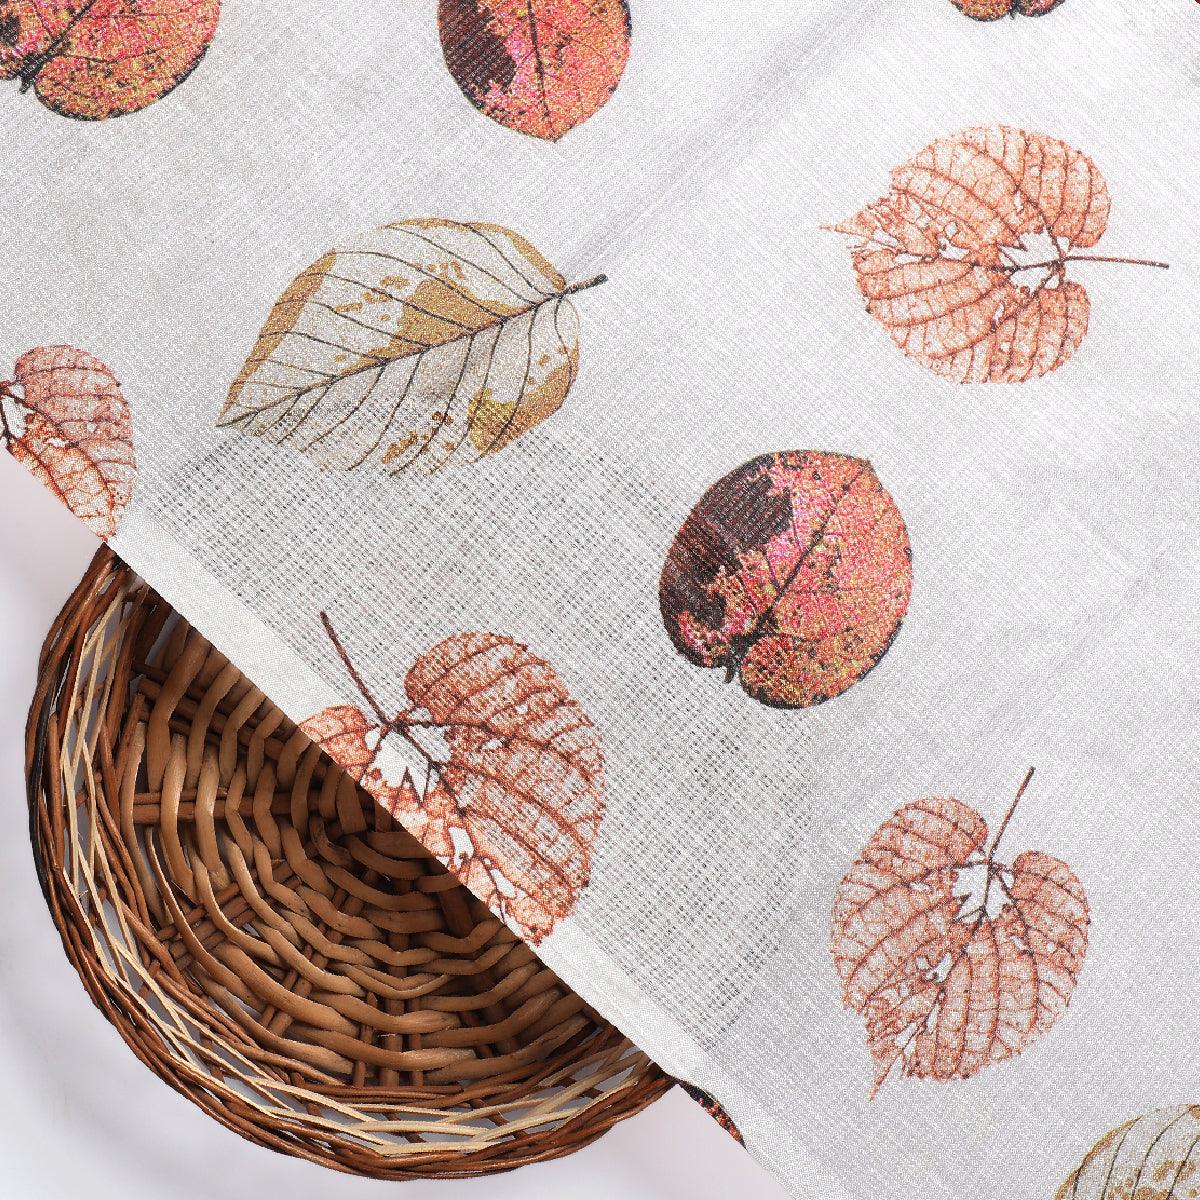 Autumn Leave Digital Printed Kota Doria Fabric - FAB VOGUE Studio®